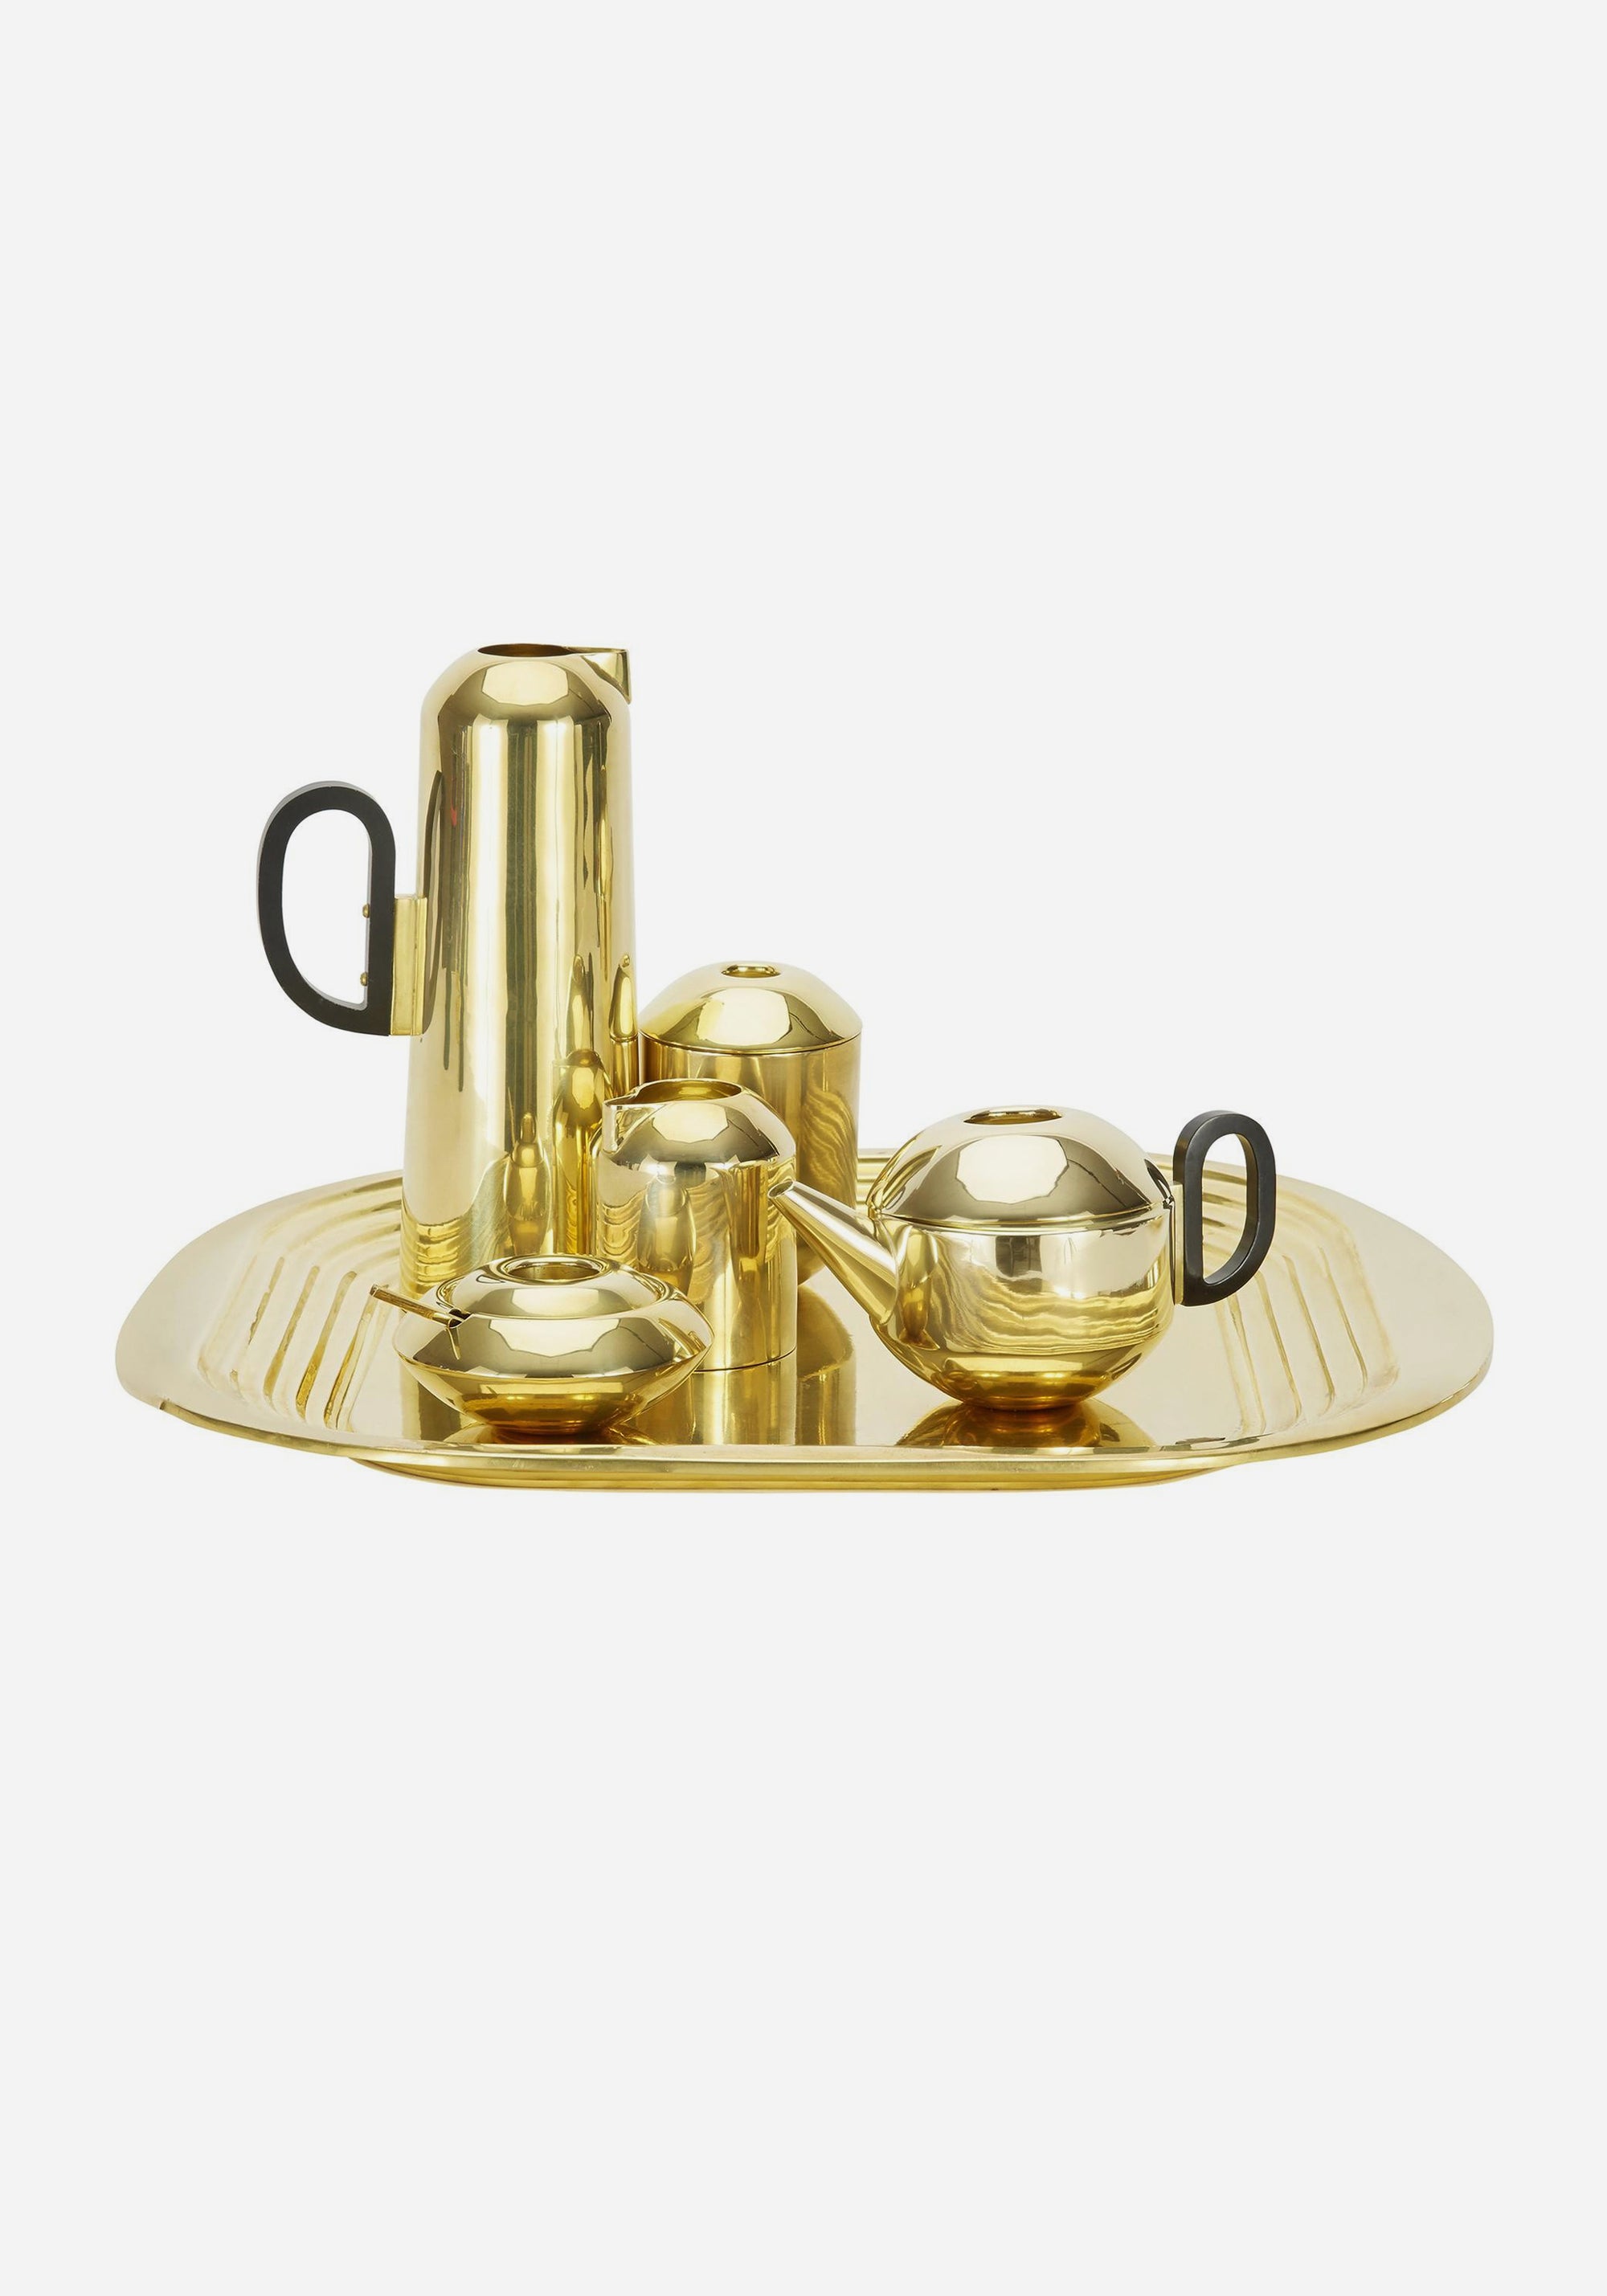 Form Tea Set made of spun brass by Tom Dixon, design